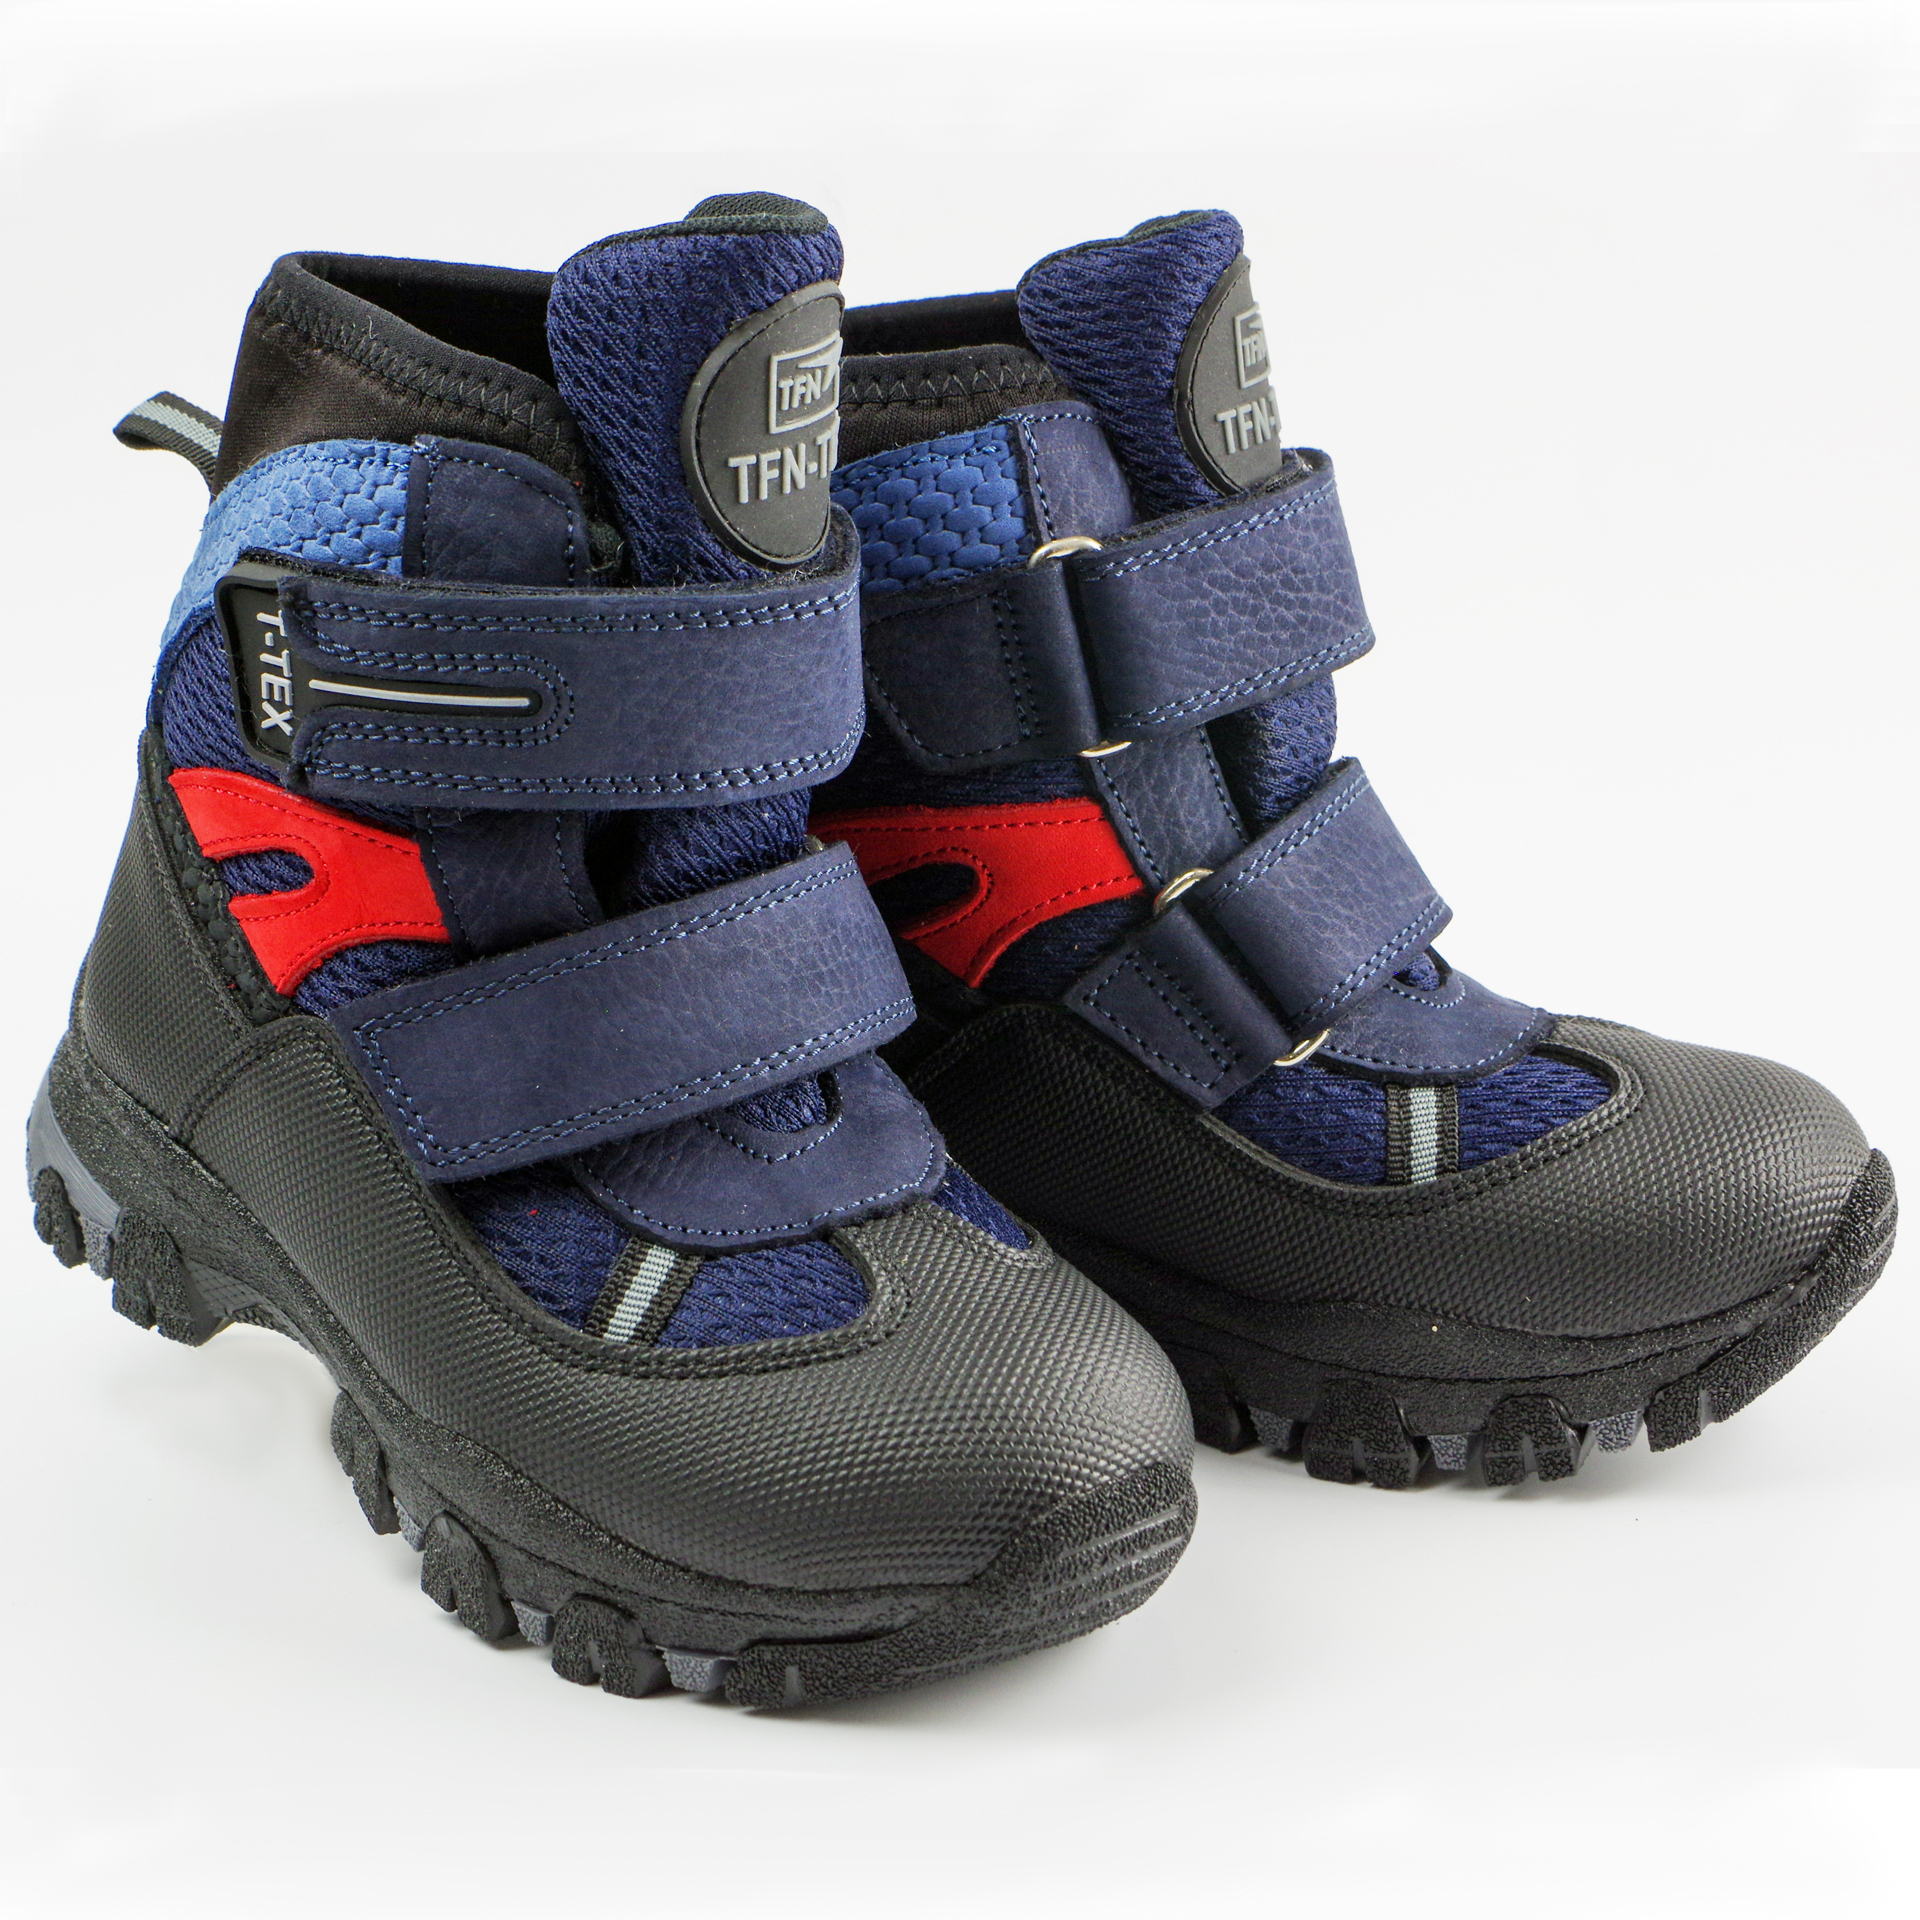 Зимние ботинки (2148) материал Мембрана, цвет темно-синий  для мальчиков 26-30 размеры – Sole Kids. Фото 2